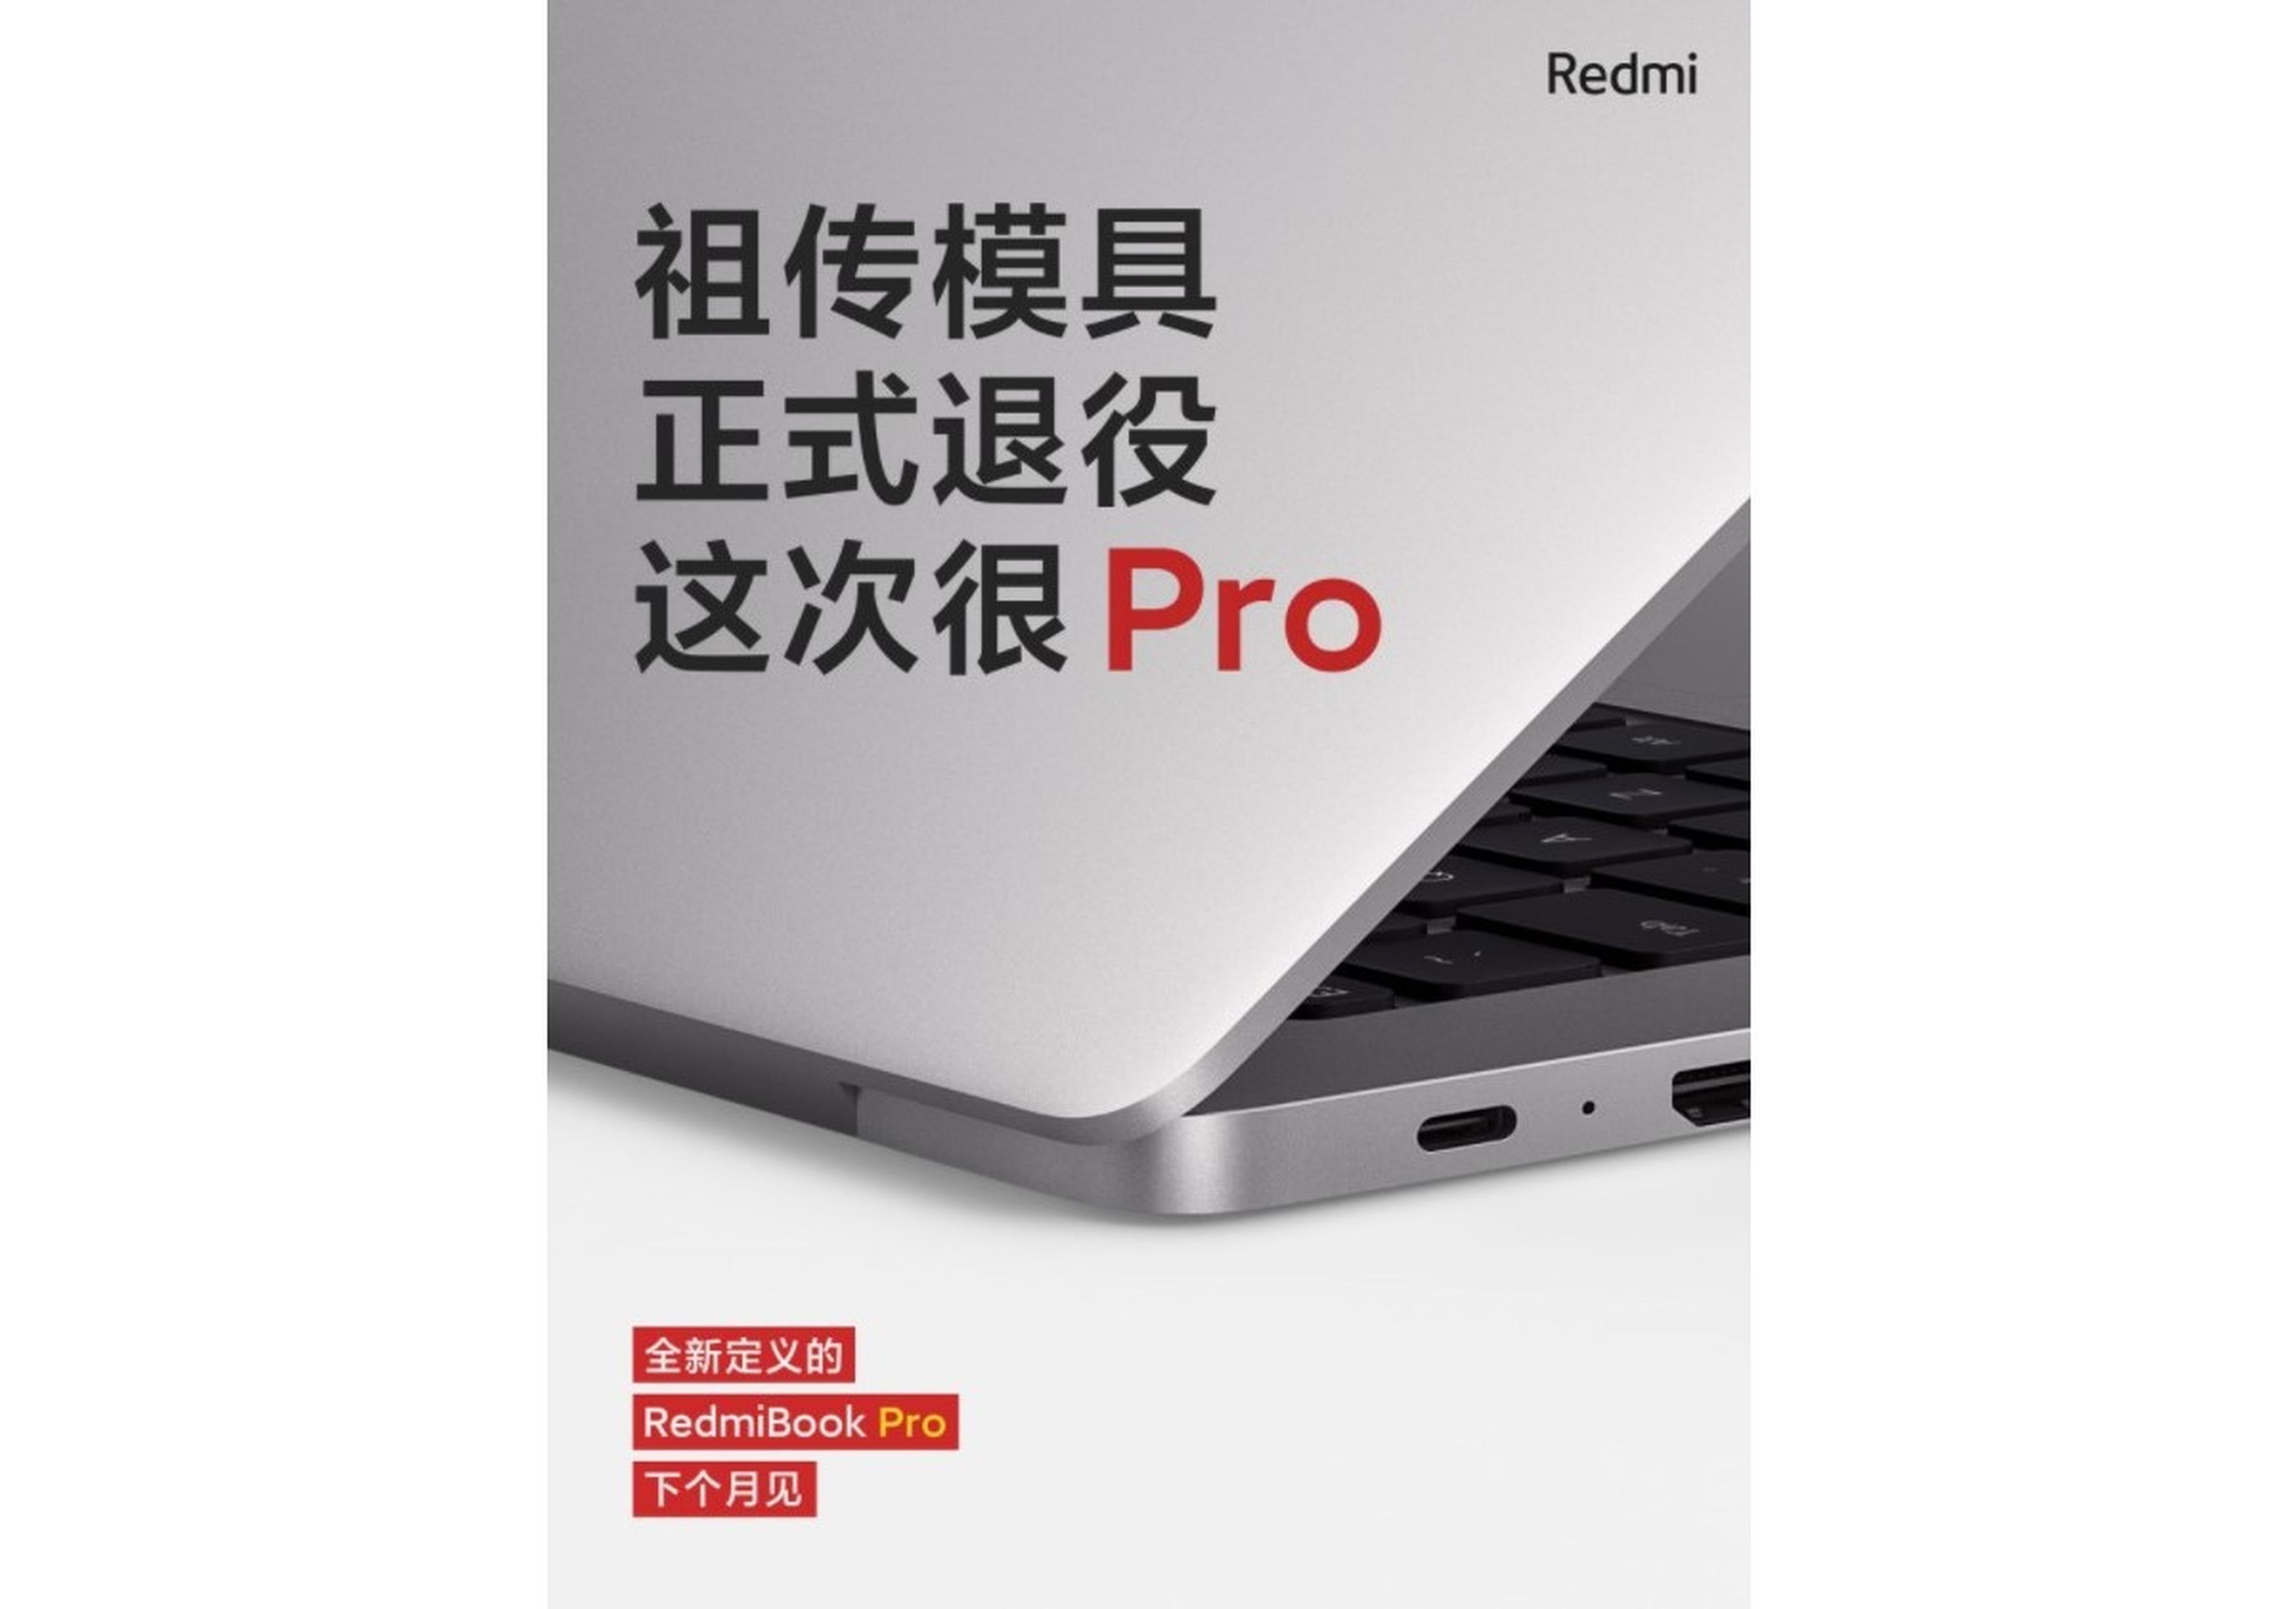 Ya tenemos el primer vistazo al RedmiBook Pro 15 y a los Redmi K40 que se presentan en unos días